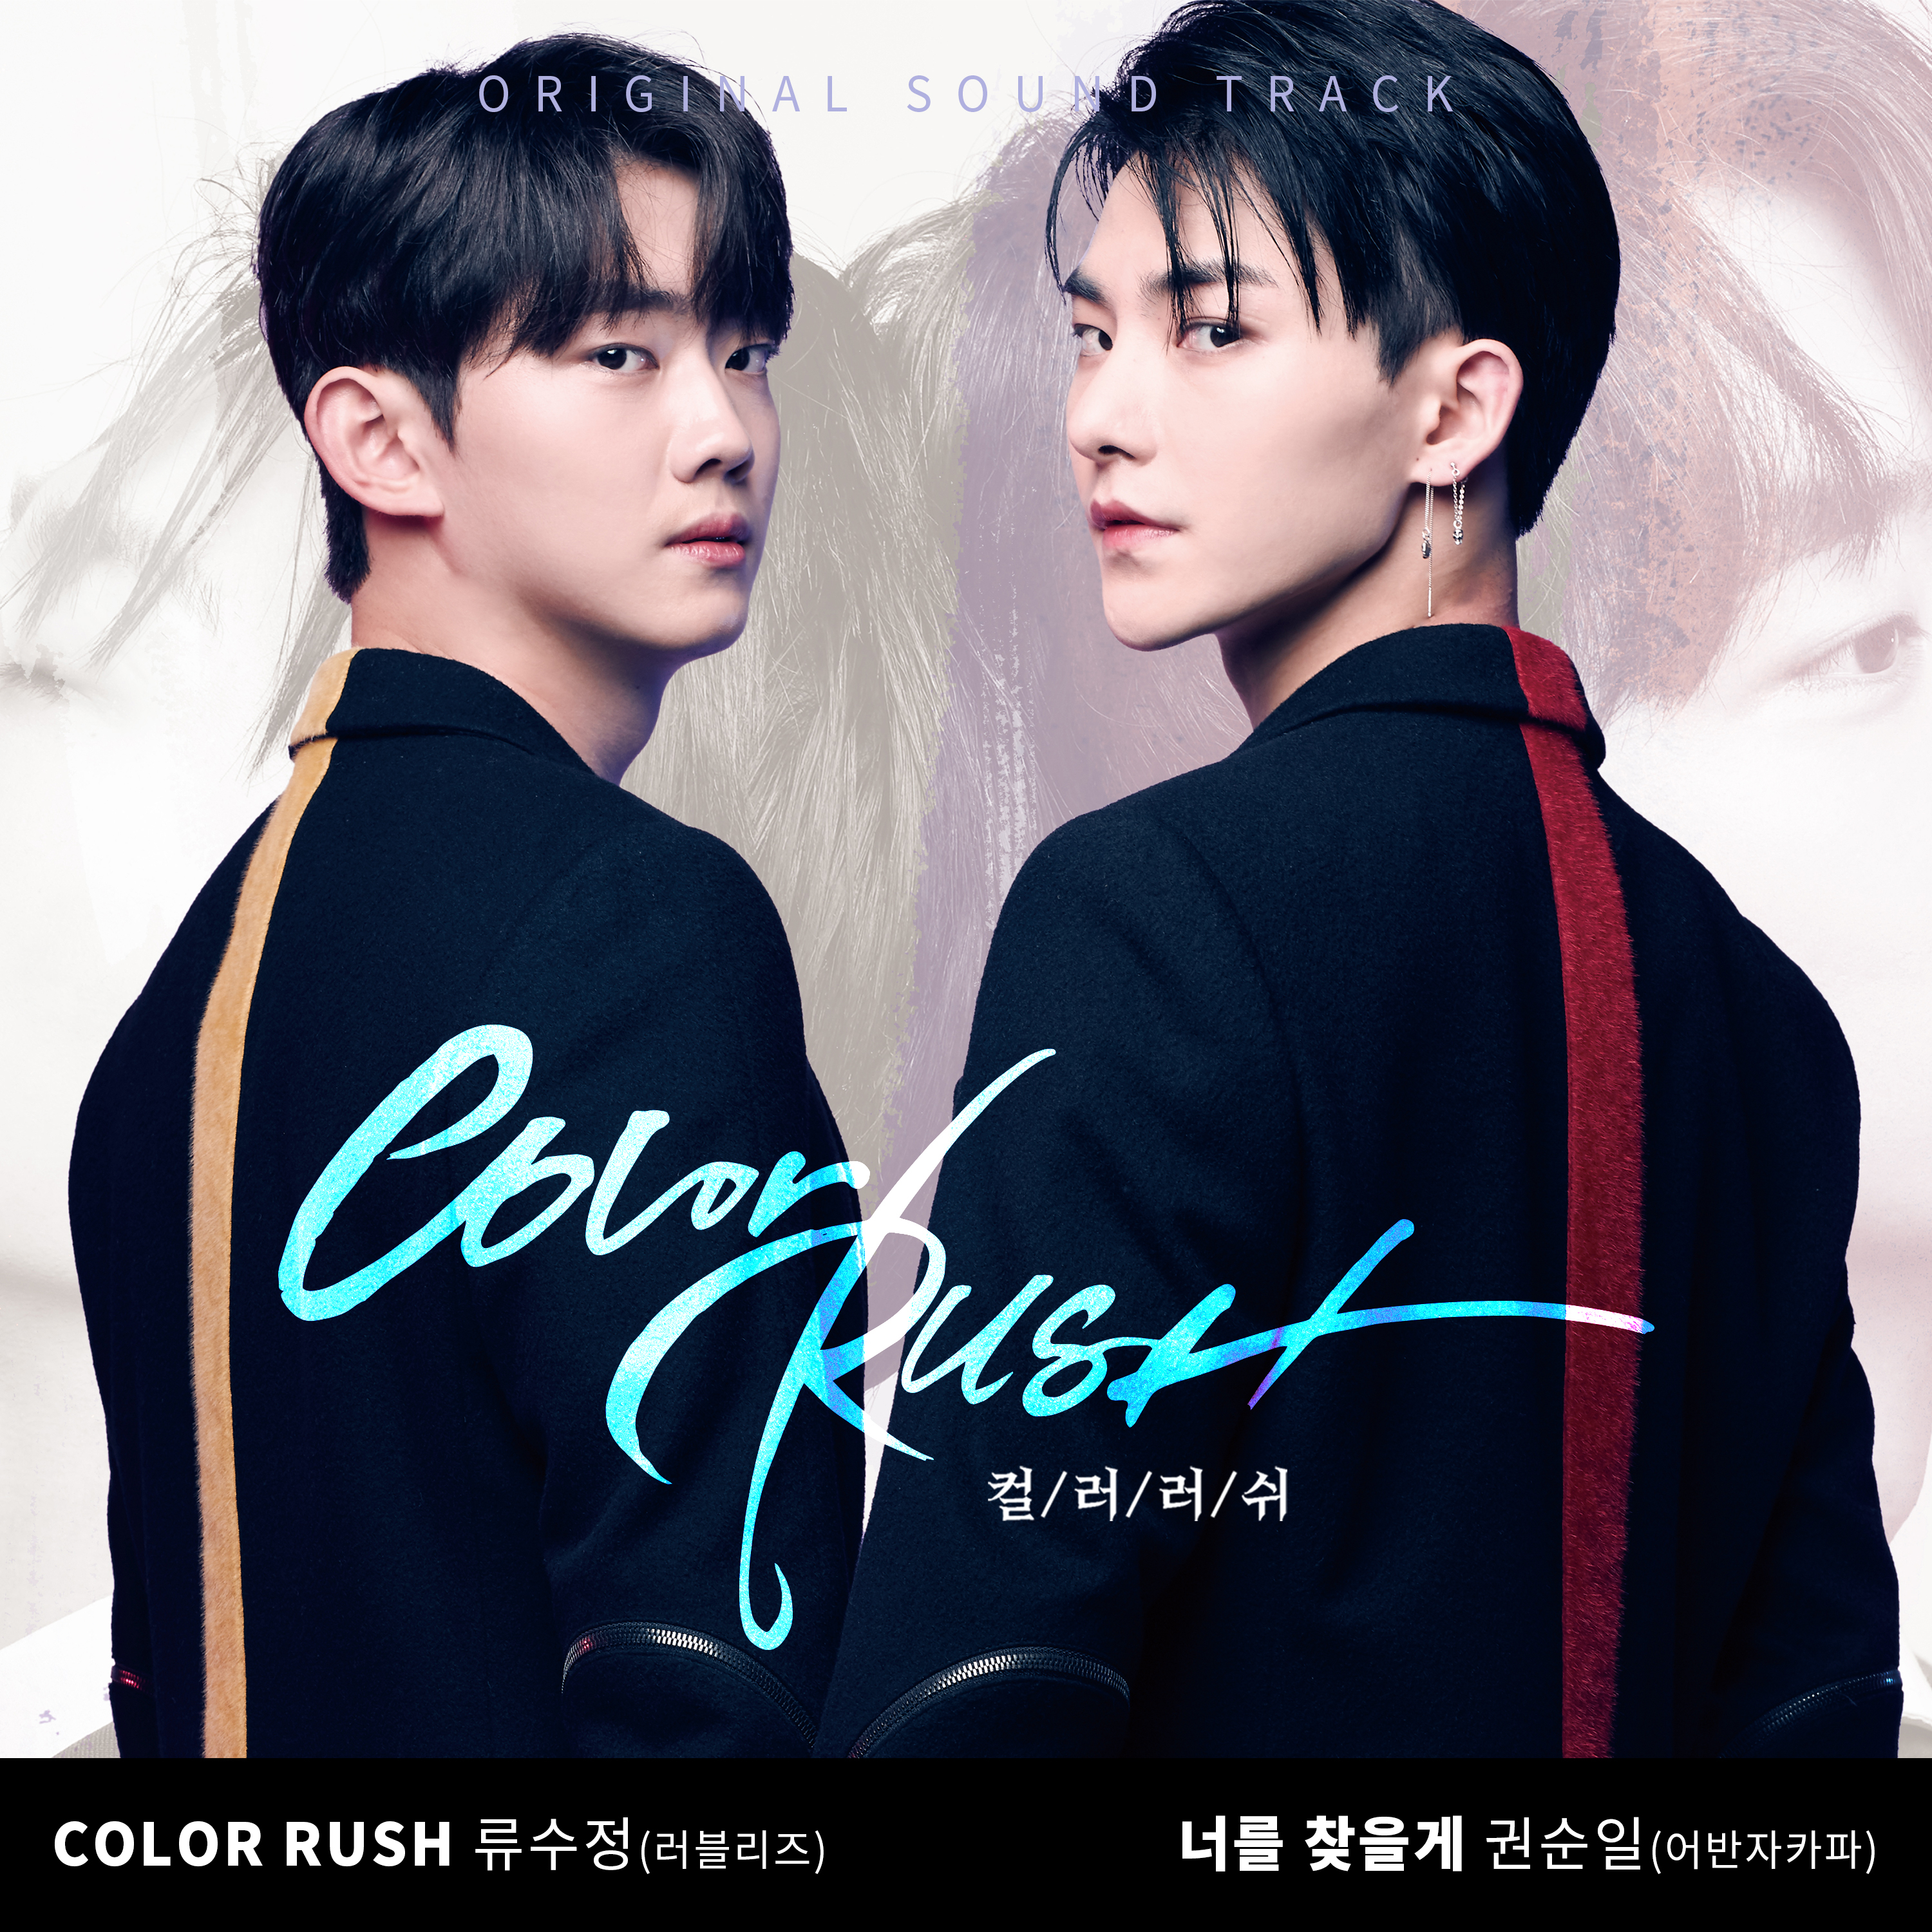 圖 Color Rush OST - 柳洙正, 權順日